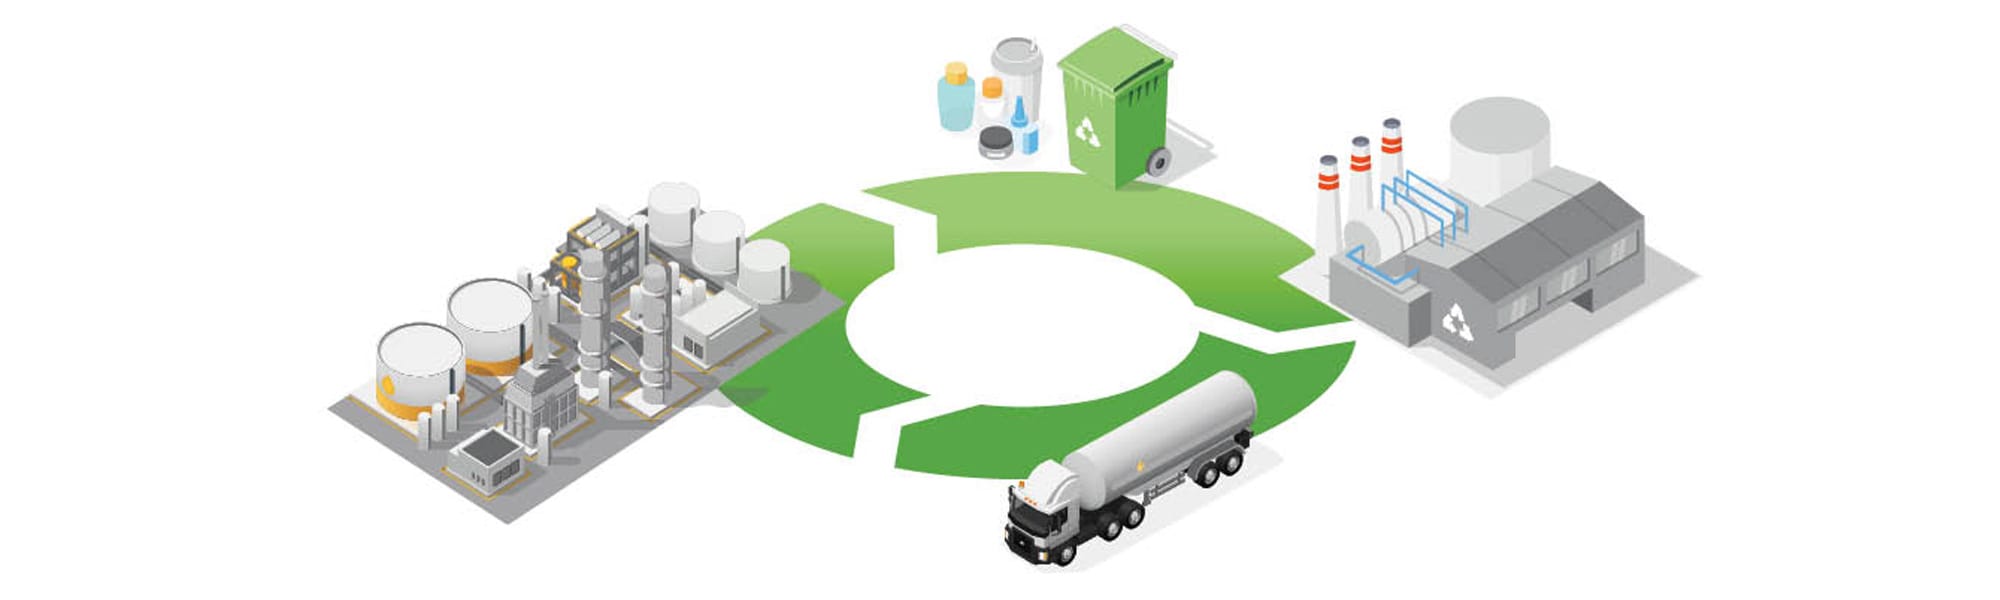 Advanced Plastics Recycling Plant Diagram